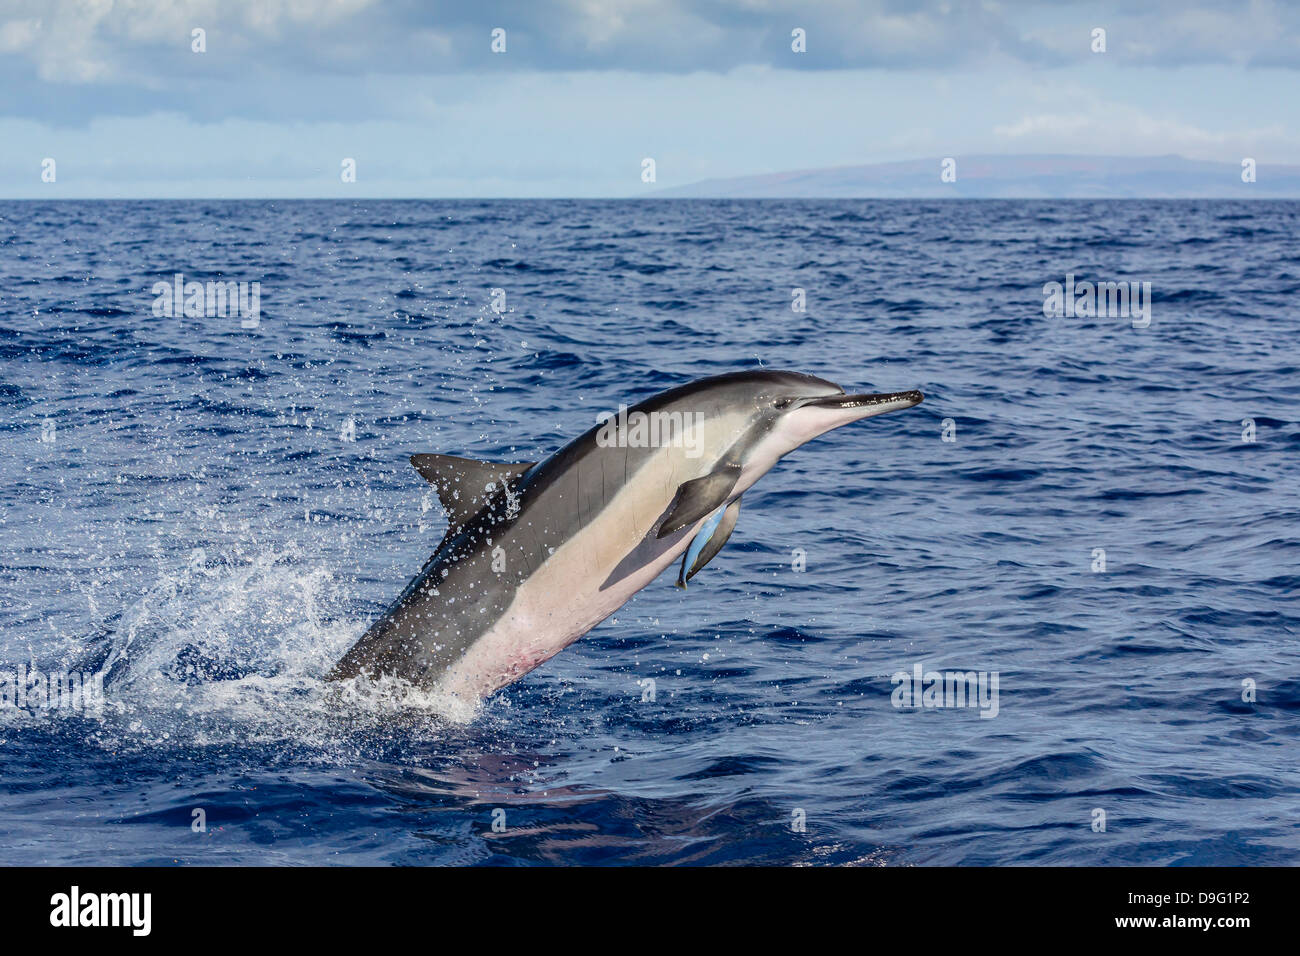 Hawaiian delfines (Stenella longirostris), canal AuAu, Maui, Hawai, Estados Unidos de América Foto de stock